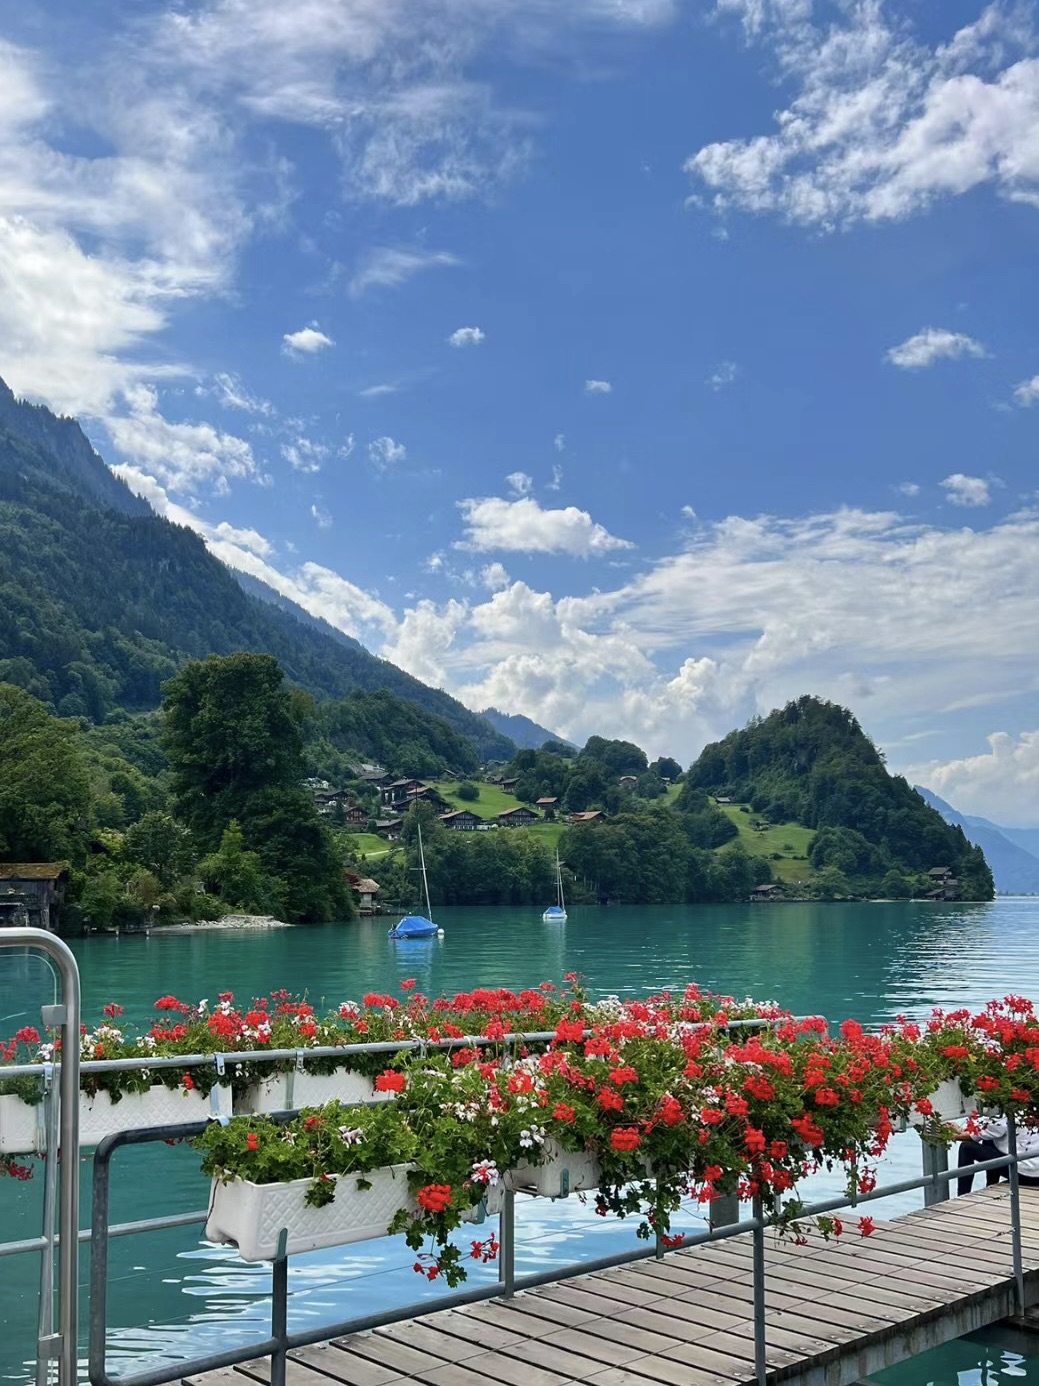 Summer in Switzerland🇨🇭 | Trip.com Switzerland